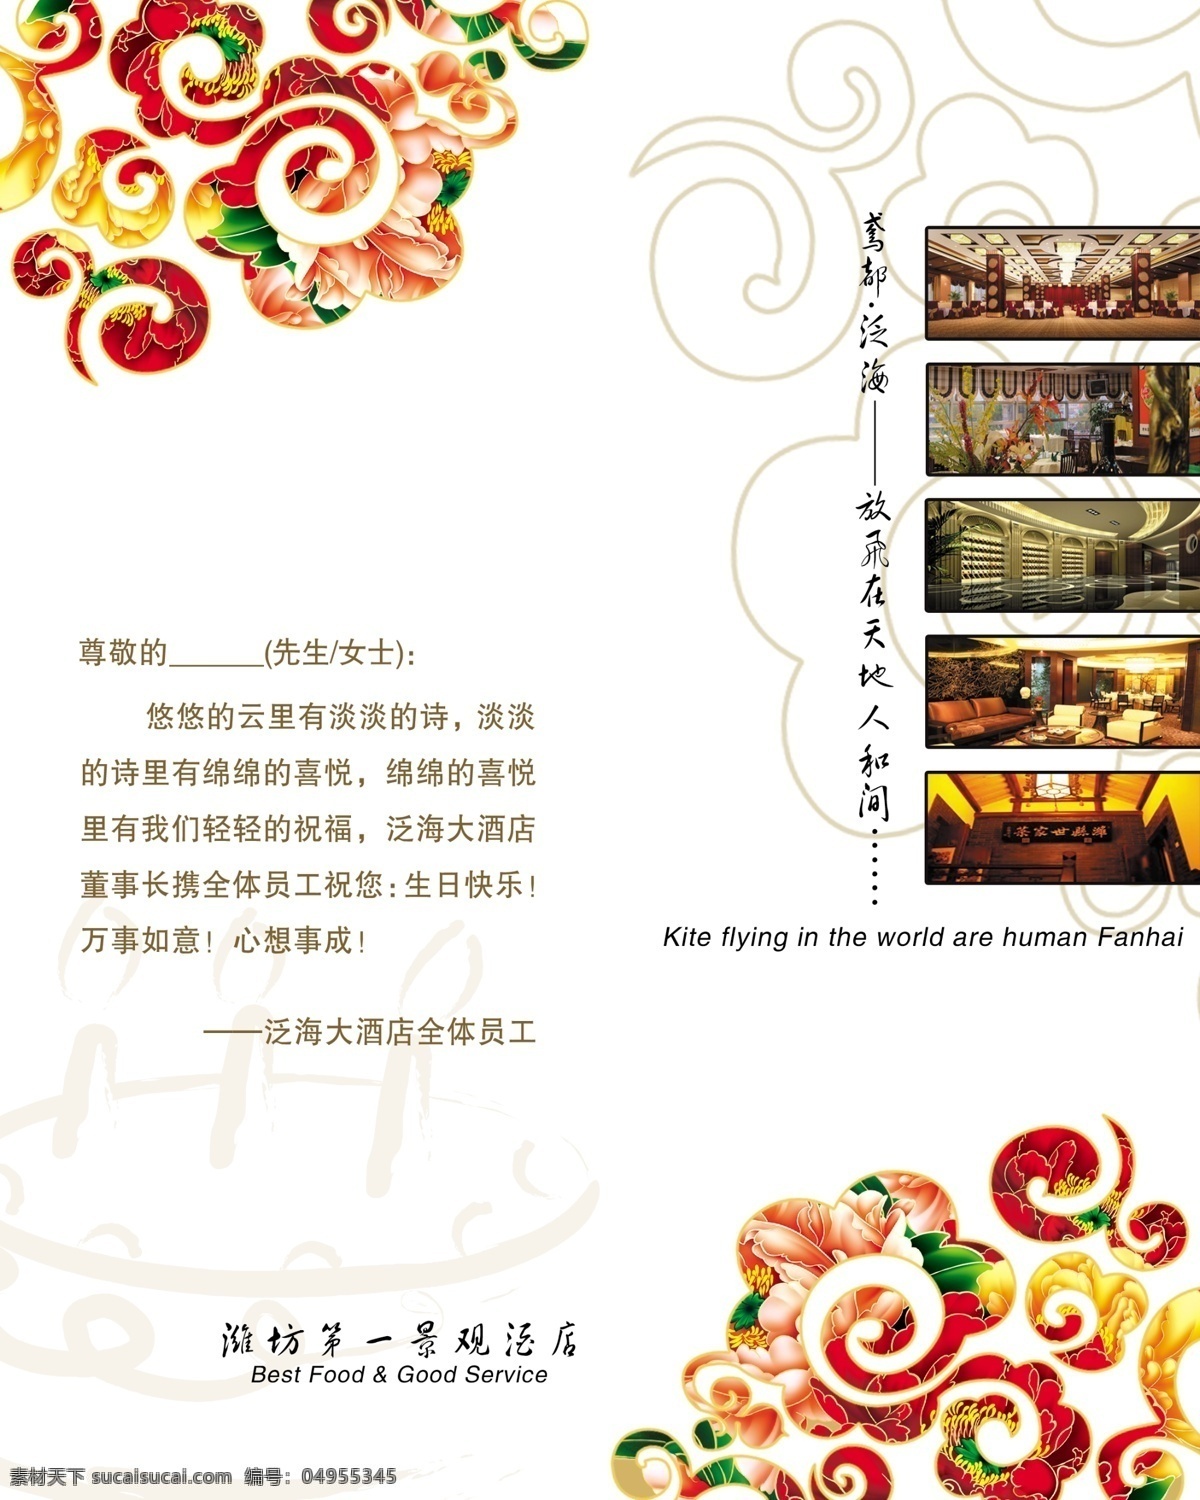 中国 花纹 贺卡 贺卡设计 卡片 psd素材 中国元素 中国风 新年卡片 新年贺卡 高档贺卡 中国花纹 白色